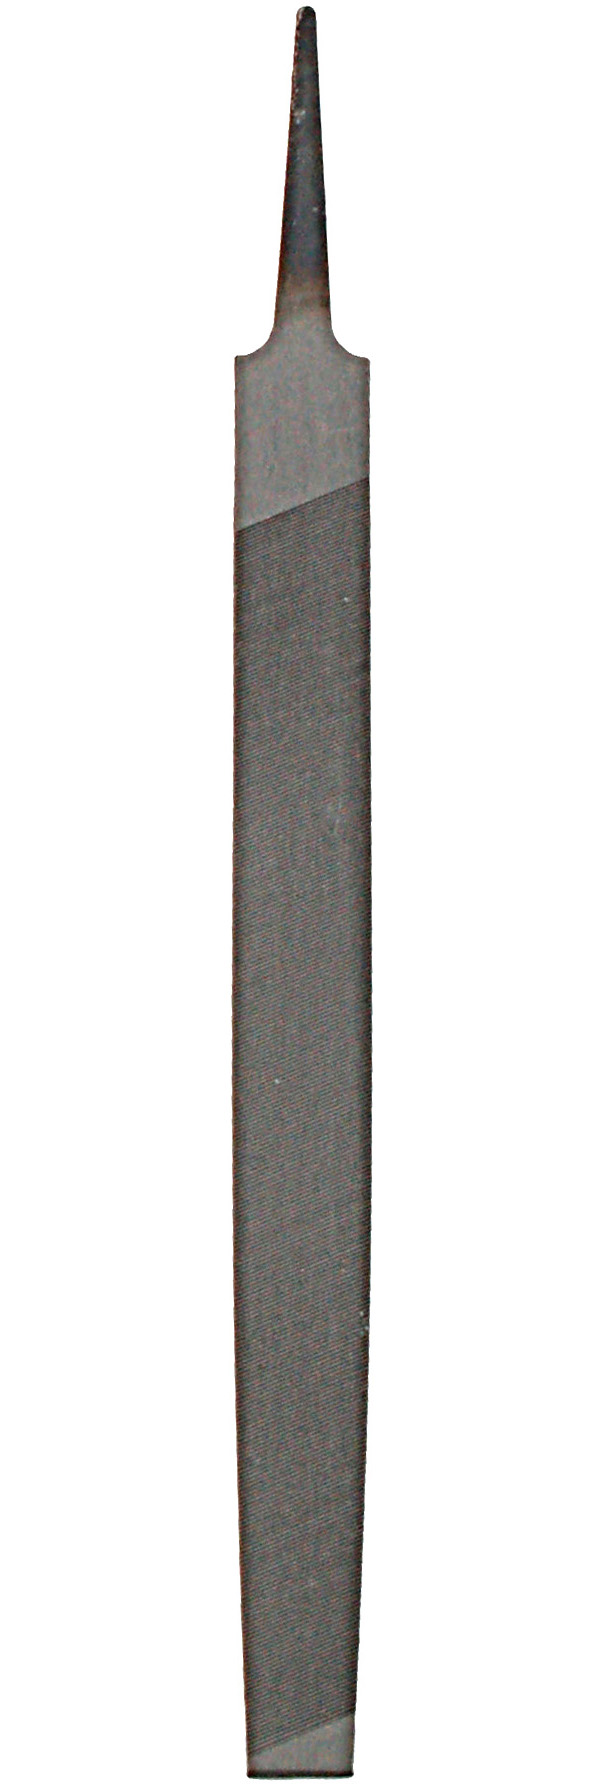 Zenport Sharpening File AGF200 fichier bâtarde à parer, 8 pouces (200 mm), pour les élagueurs affûtage des couteaux